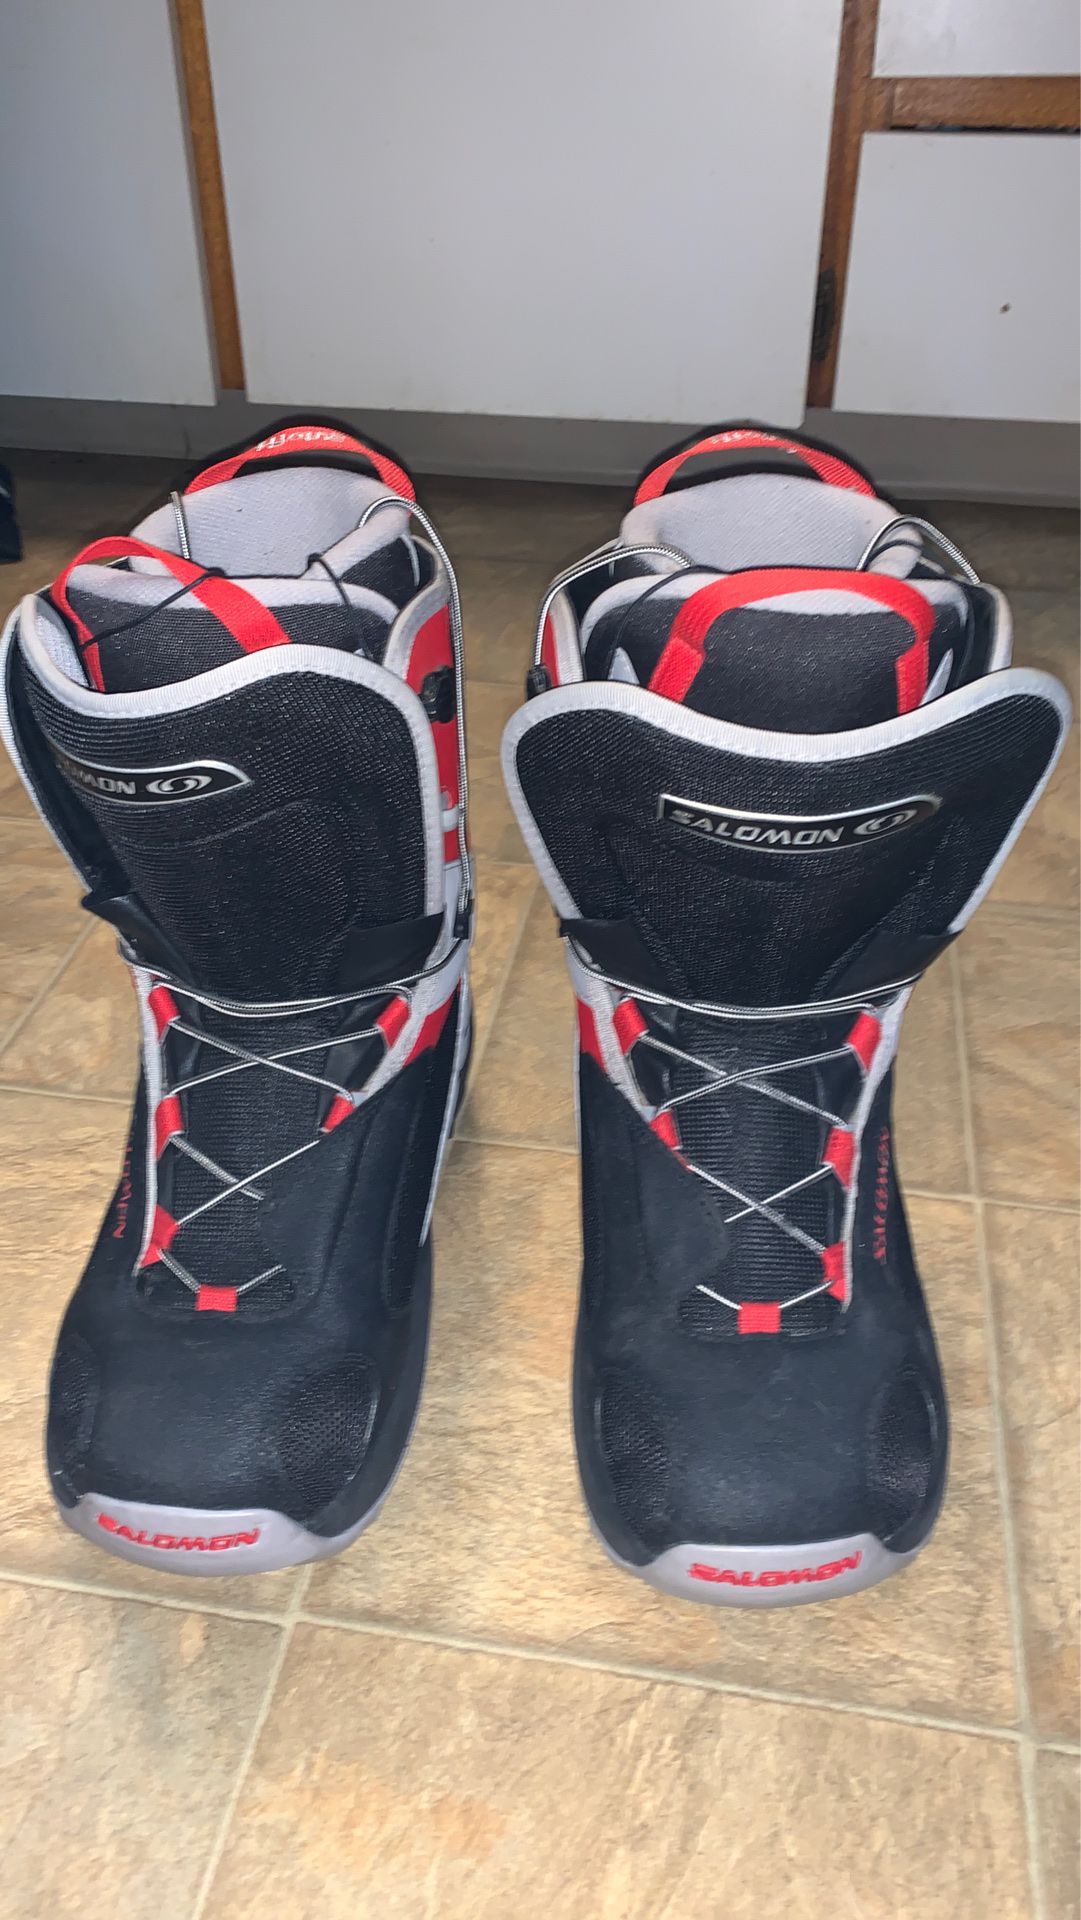 Salomon Dialogue Men’s size 10 snowboarding boots